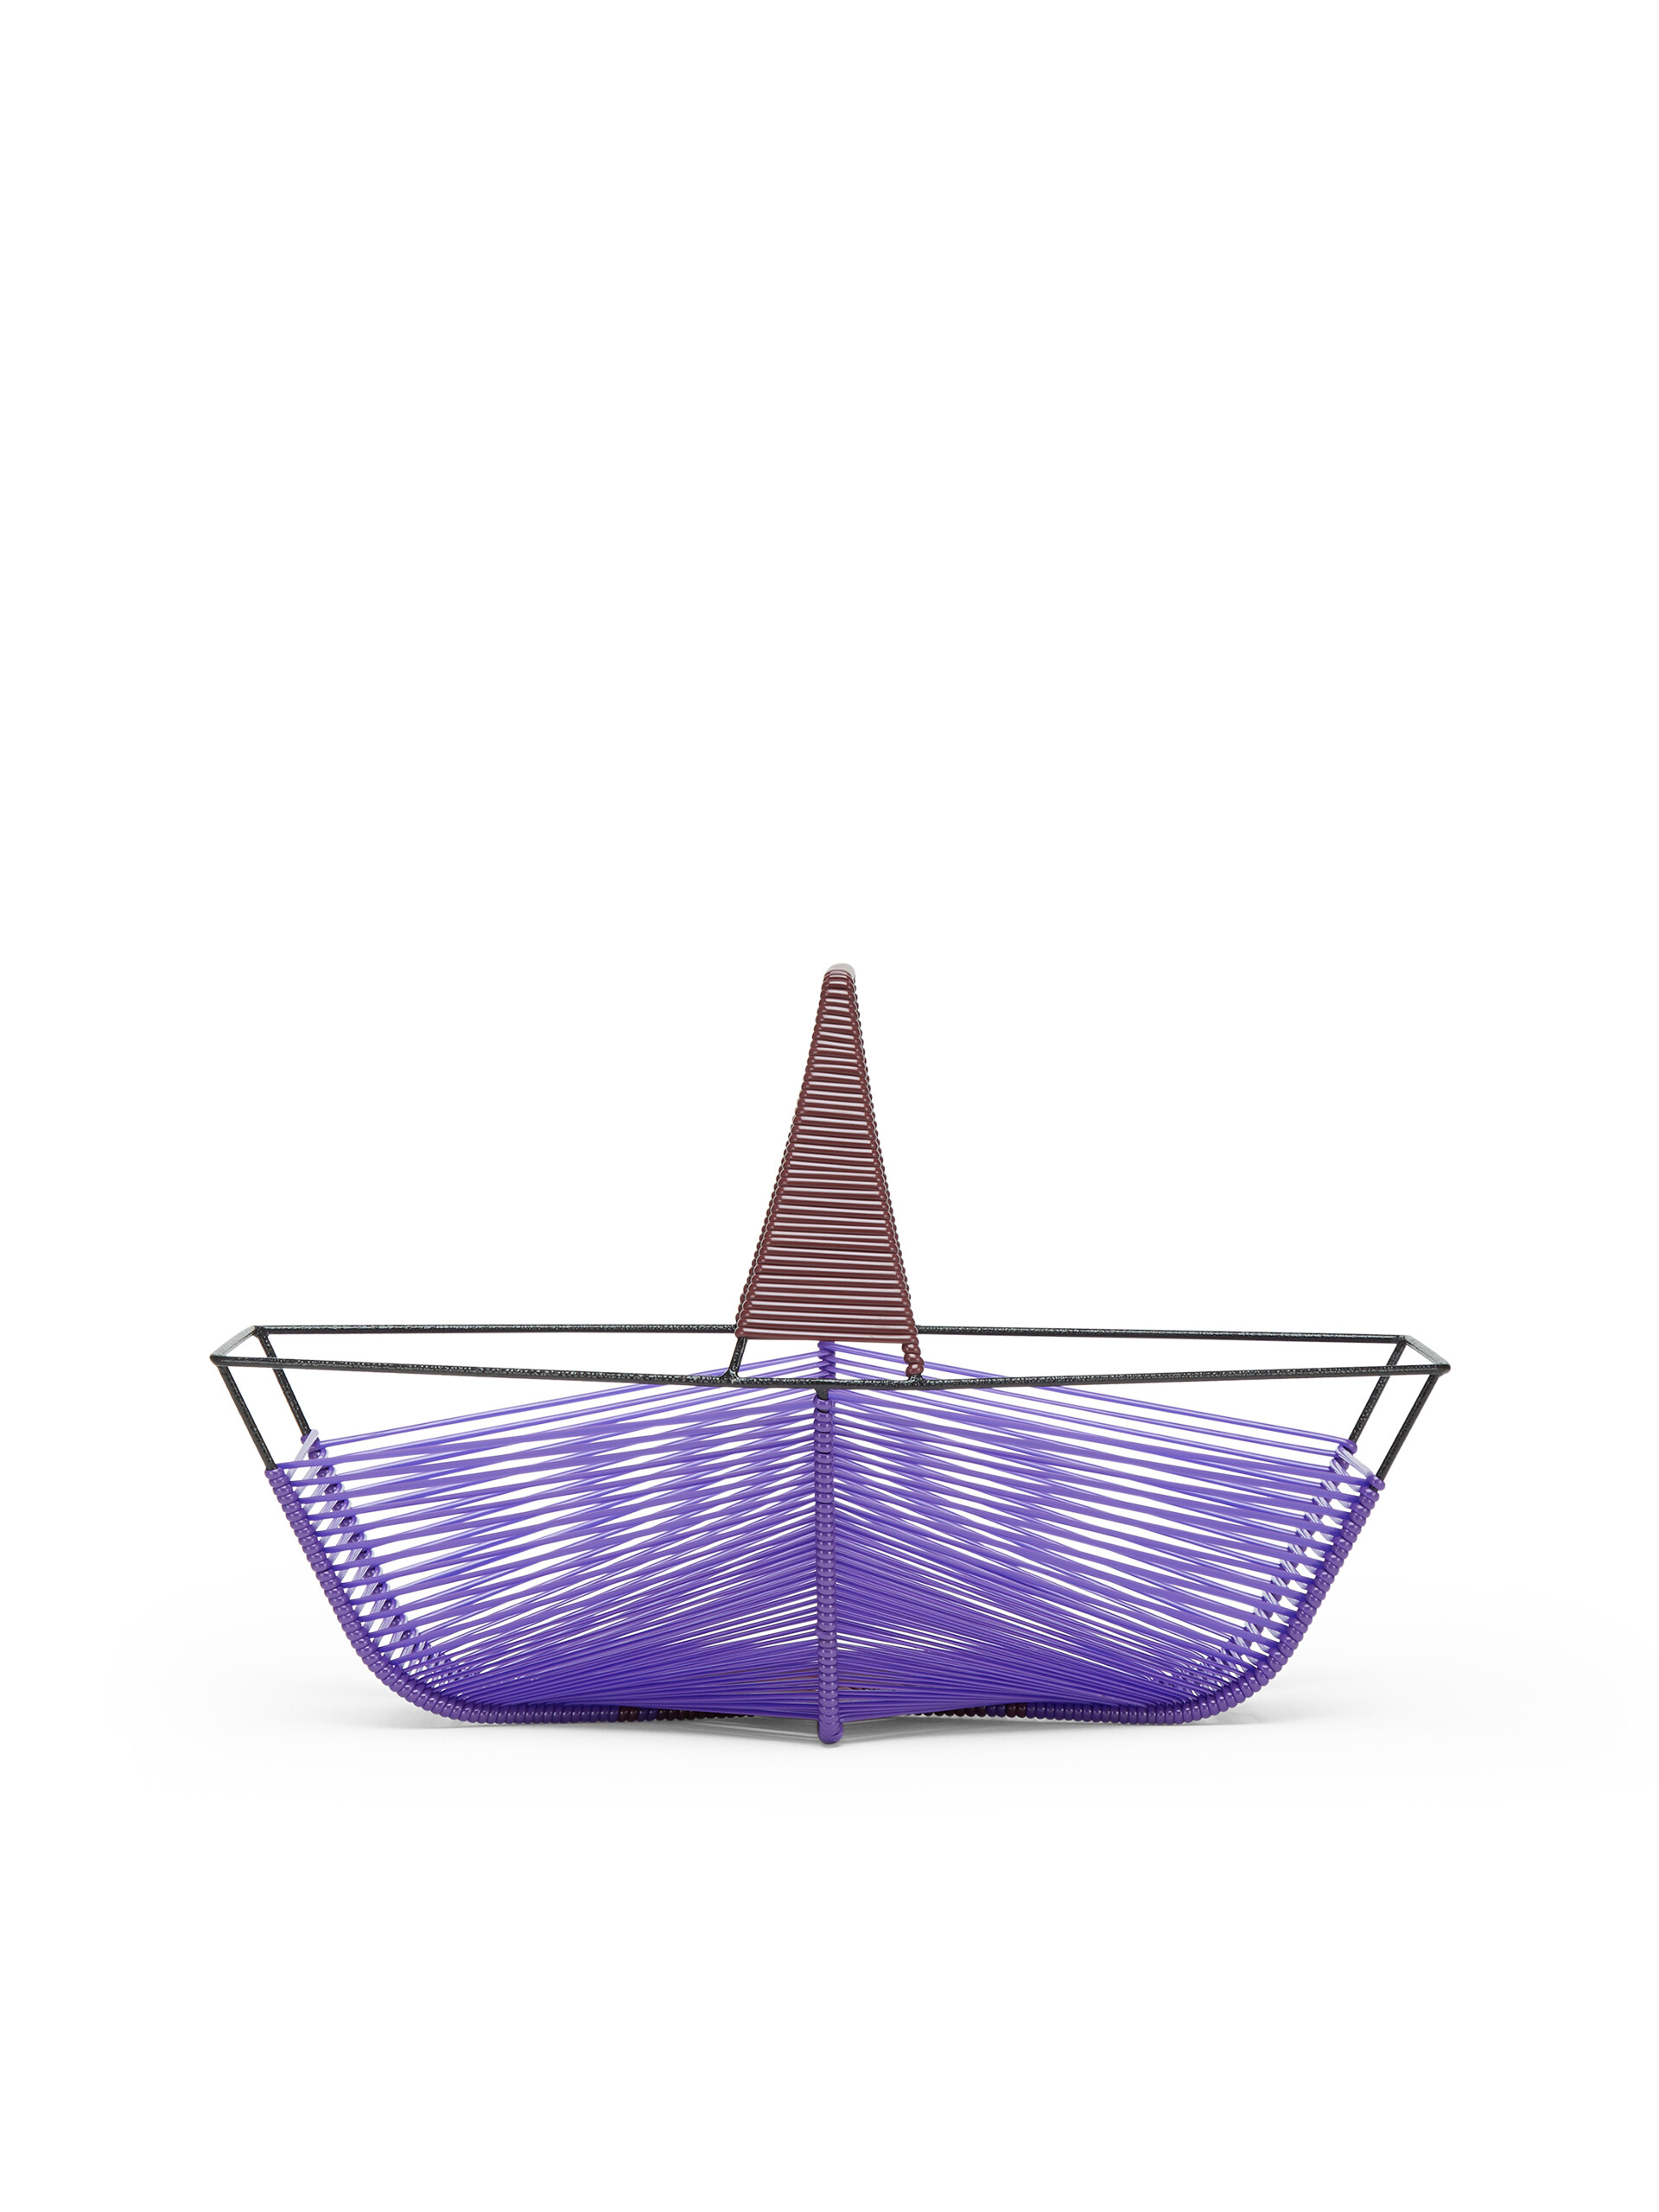 Corbeille à fruits hexagonale MARNI MARKET violet et marron - Accessoires - Image 3